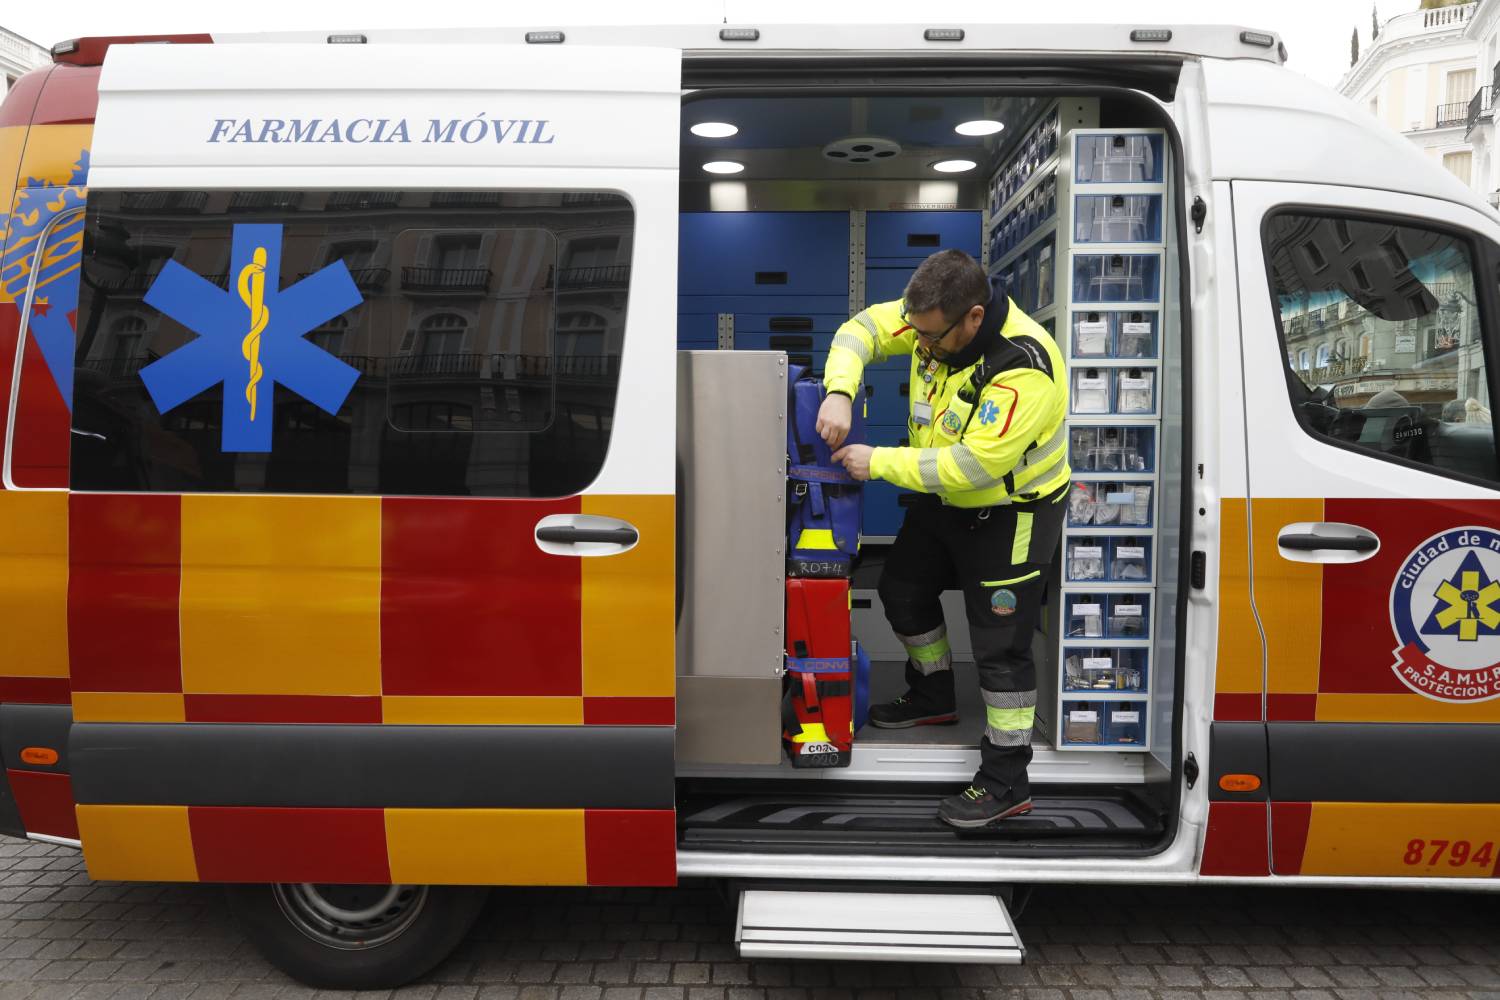 Las farmacias móviles del Samur-Protección Civil están diseñadas para asistir a las ambulancias cuando están atendiendo una emergencia en el foco del incidente o en la urgencia del hospital de traslado. Foto: AYUNTAMIENTO DE MADRID. 